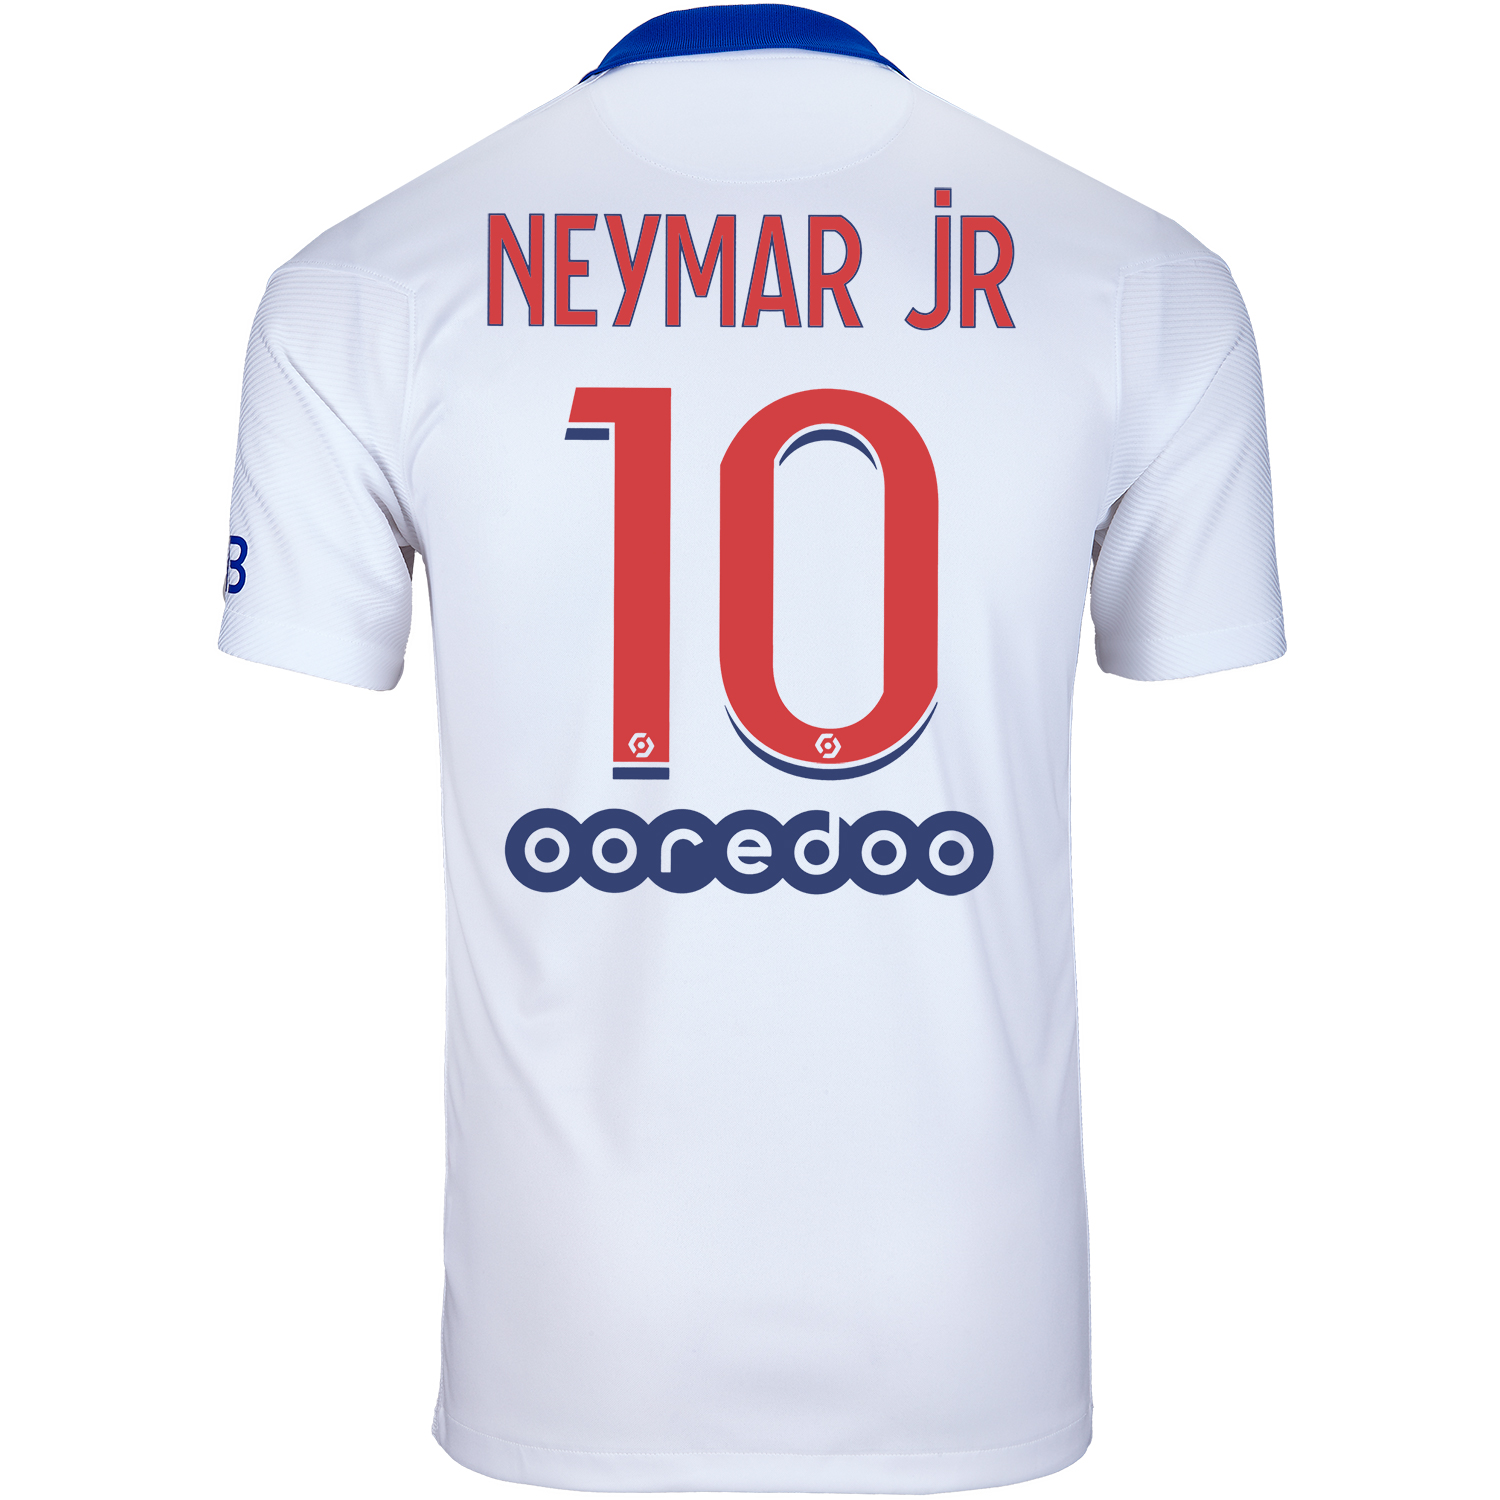 2020/21 Kids Nike Neymar Jr PSG Away Jersey  SoccerPro